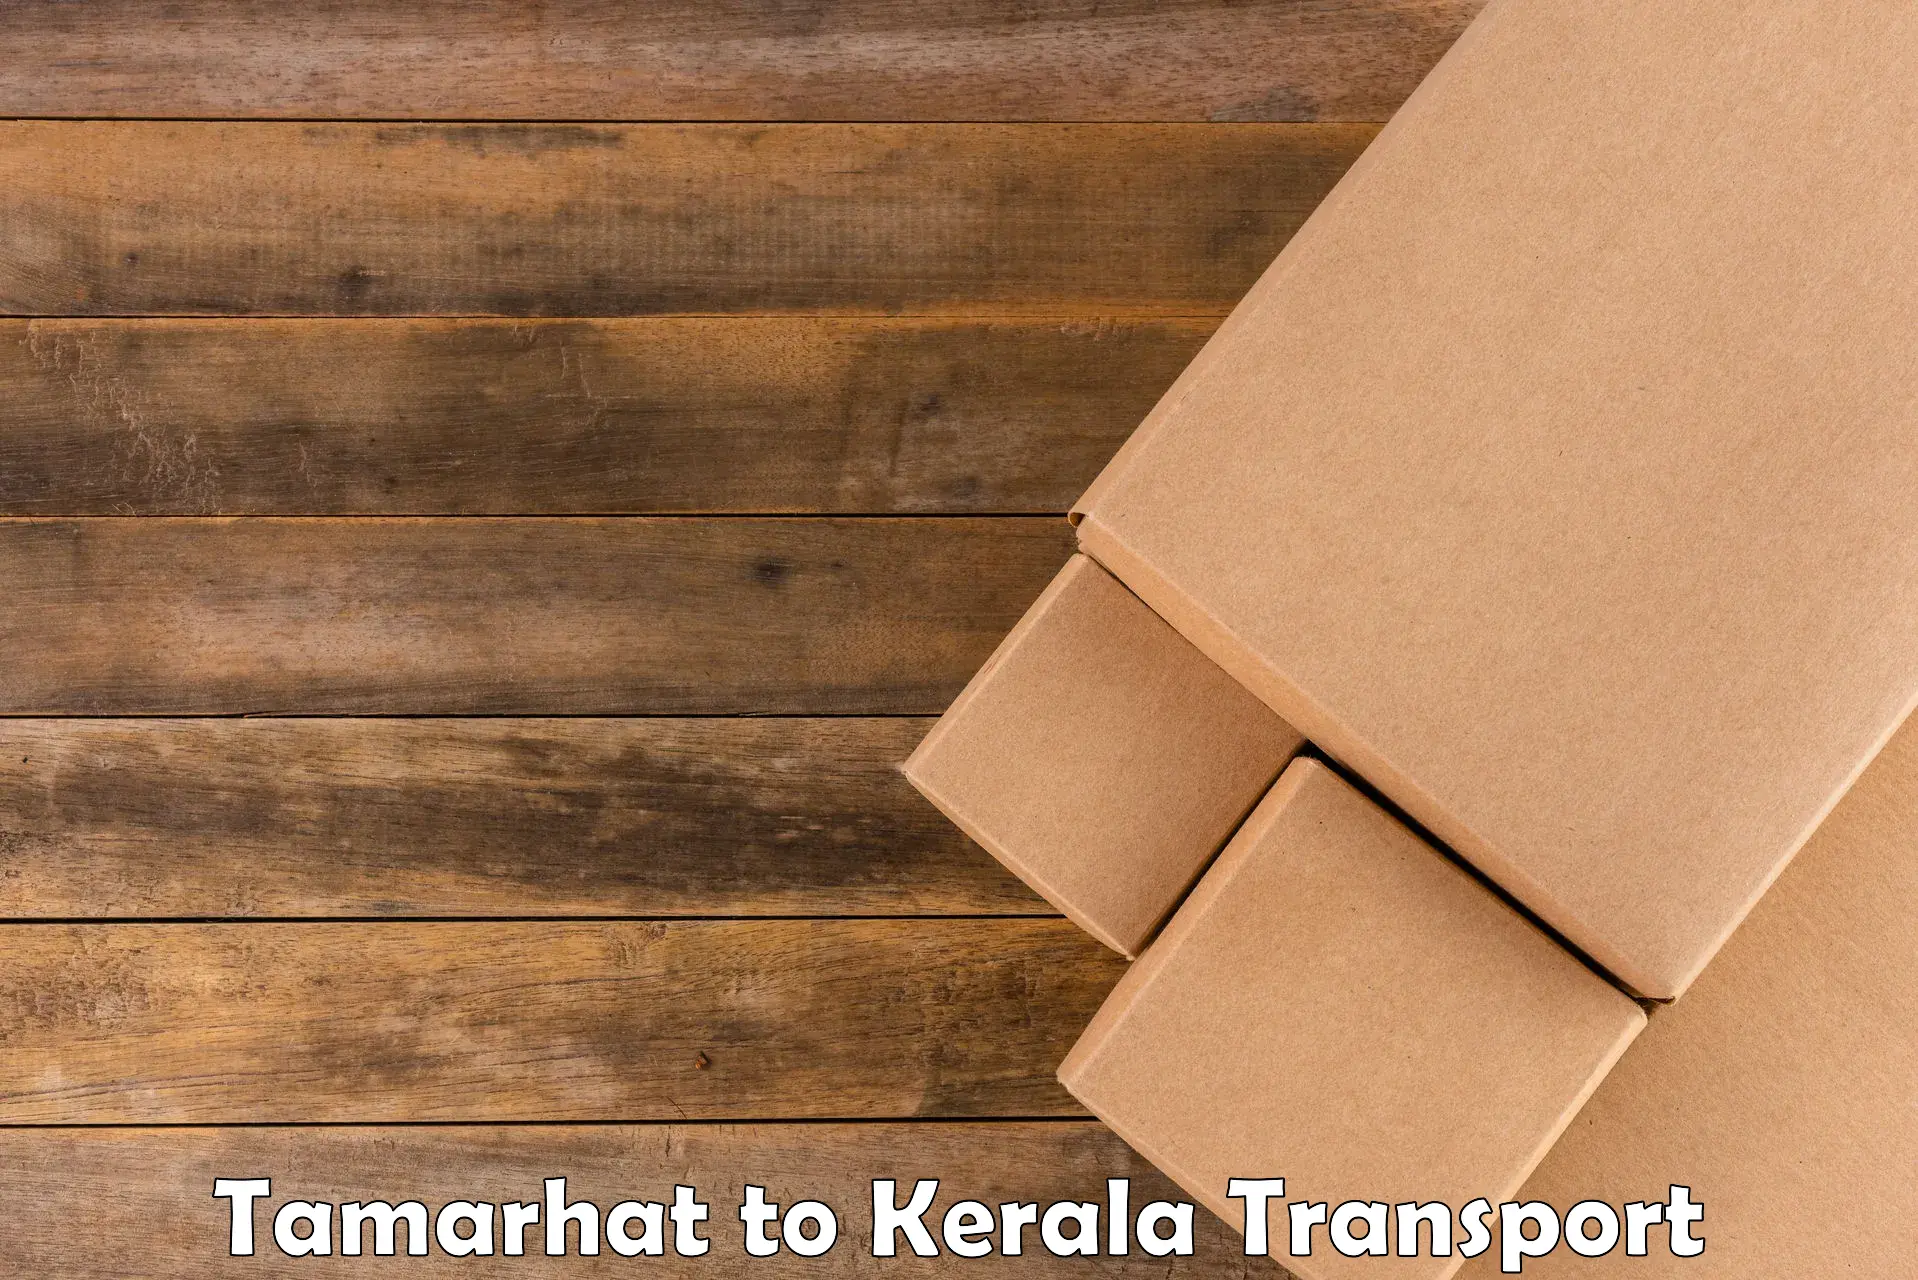 Transport in sharing Tamarhat to Kalanjoor